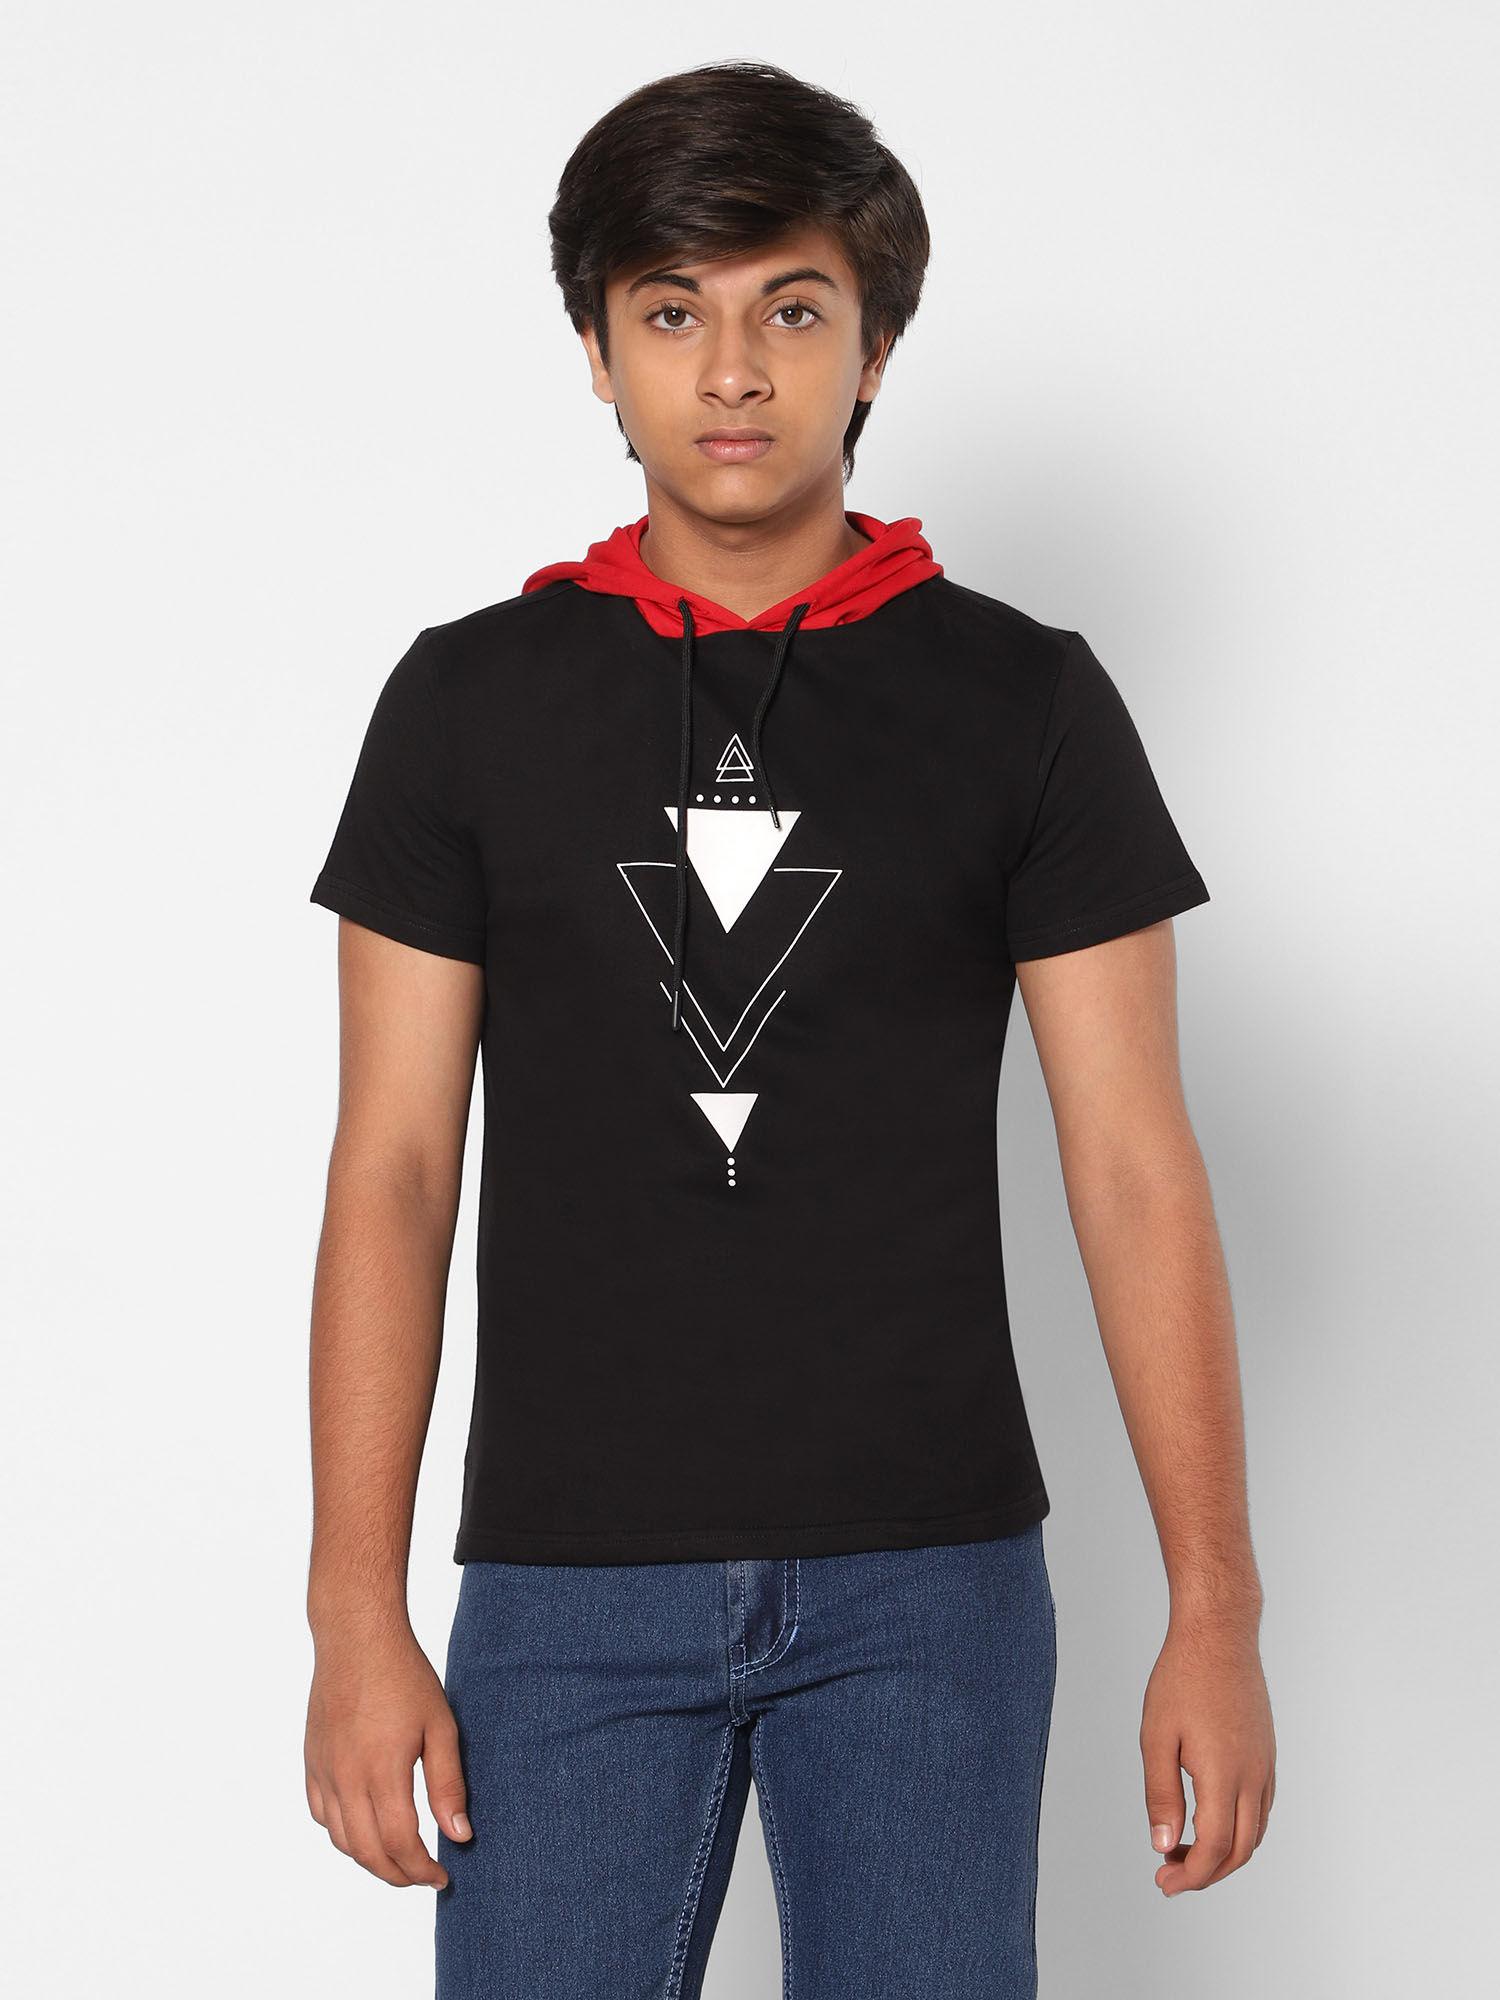 boys fashion black t-shirt with hoodie geometric art